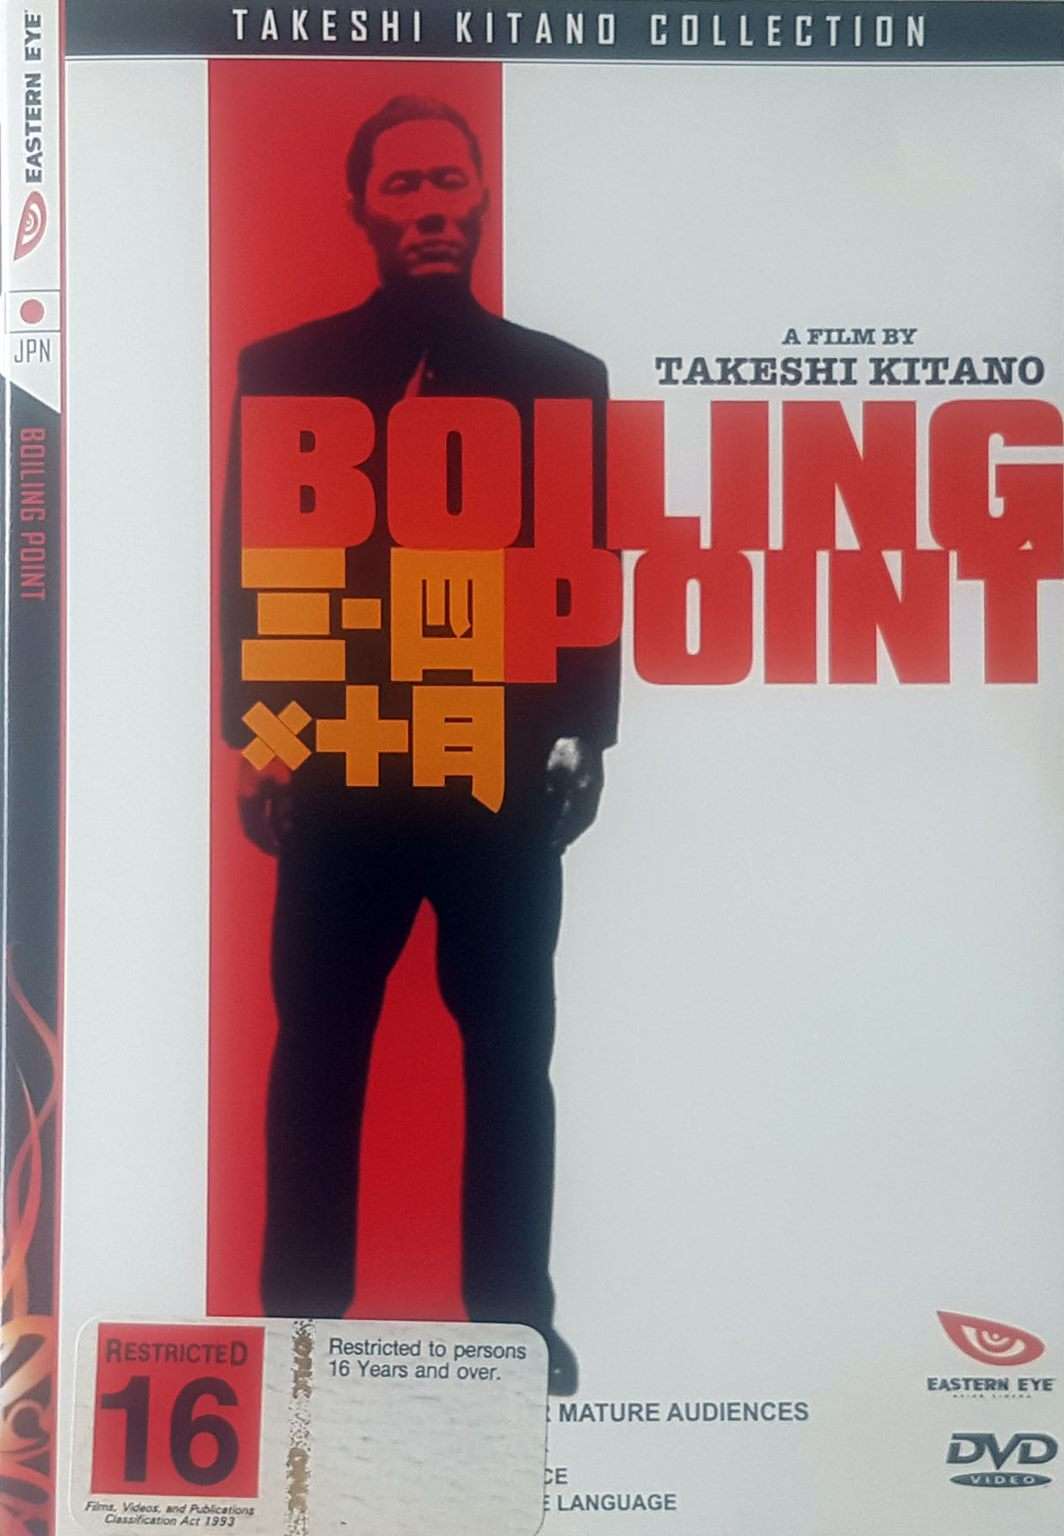 Boiling Point Takeshi Kitano